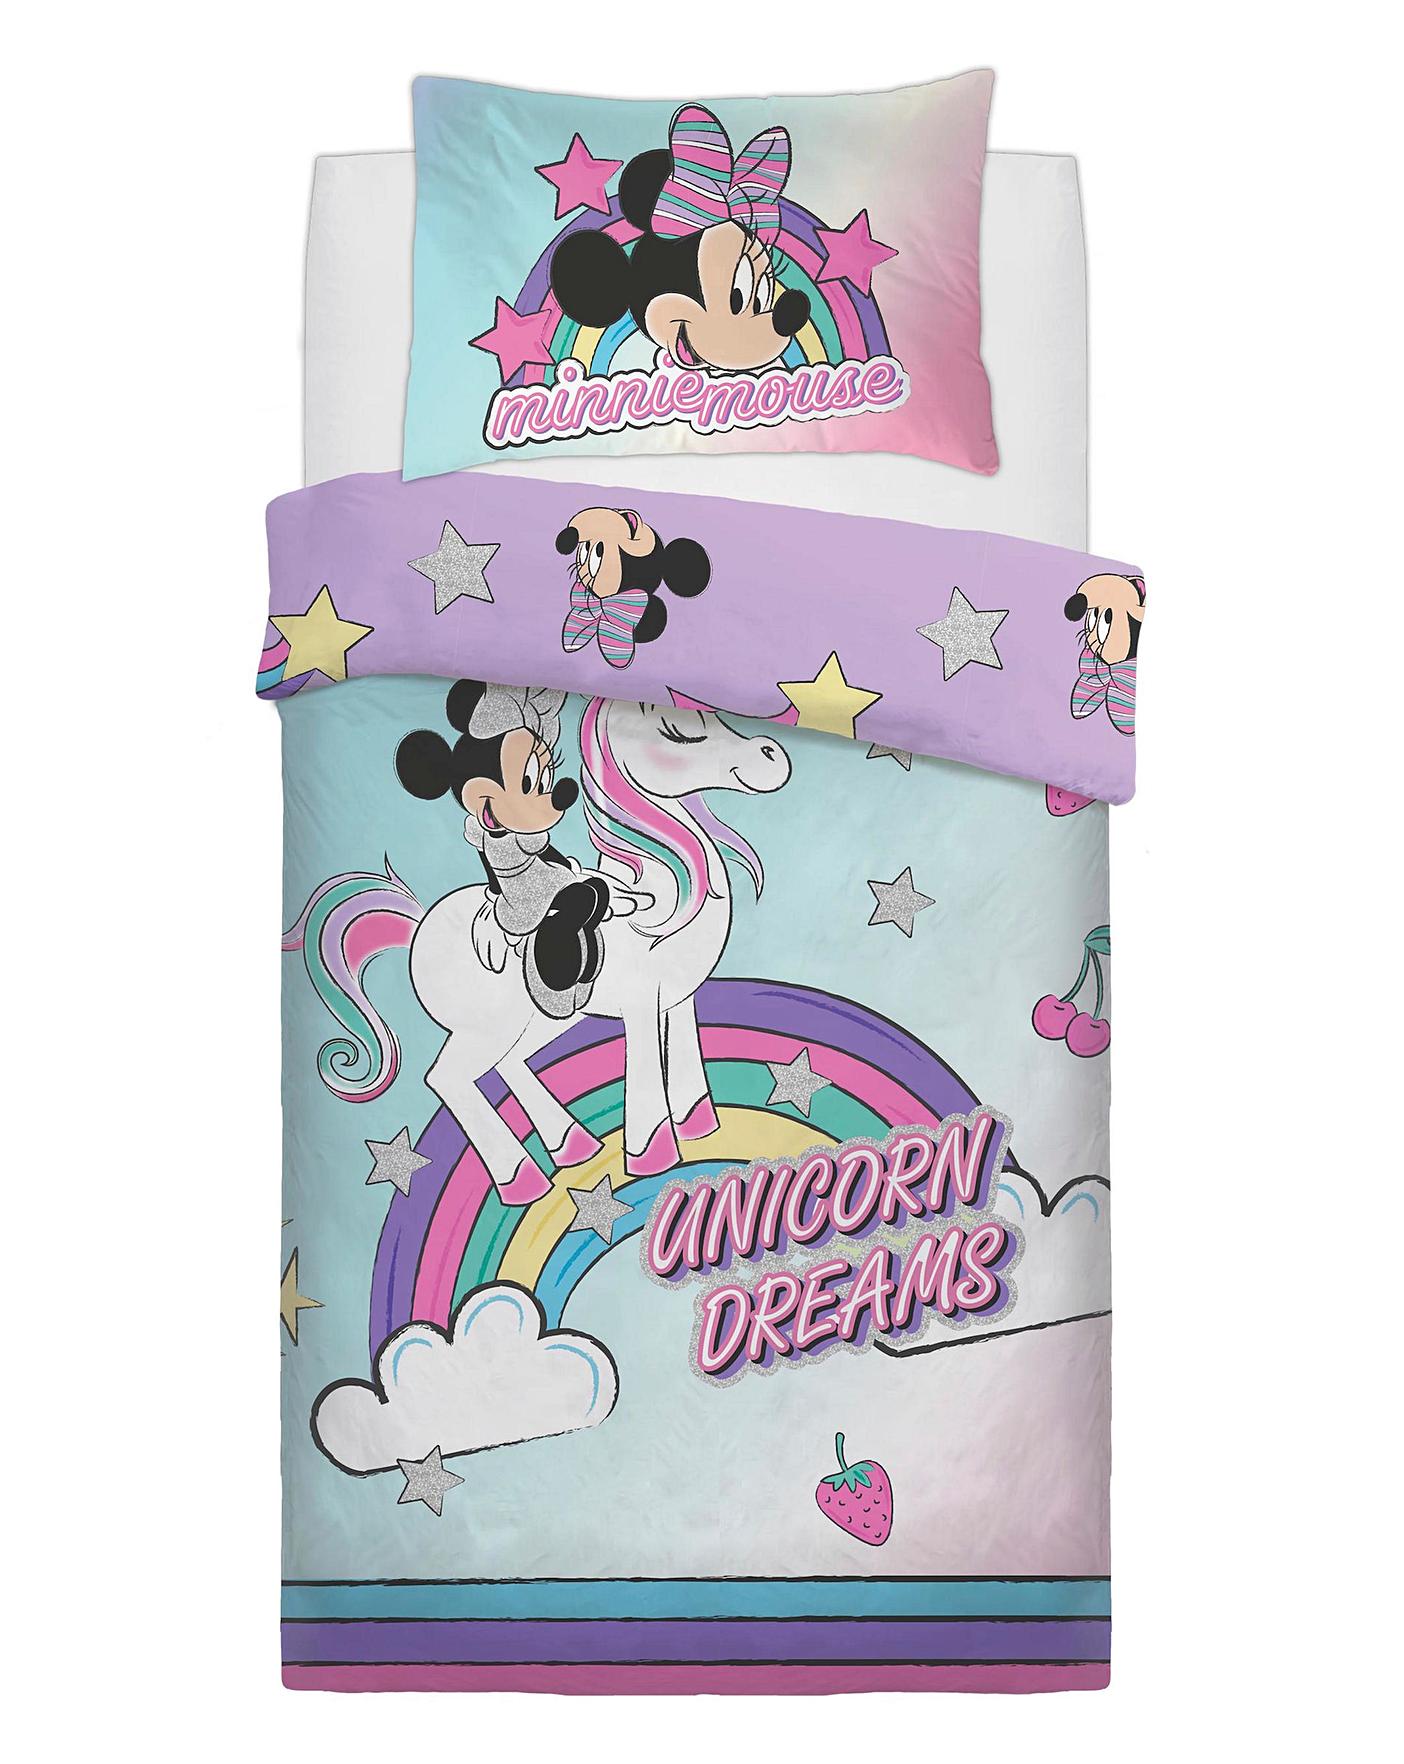 Minnie Mouse Unicorn Dreams Single Duvet The Kids Division